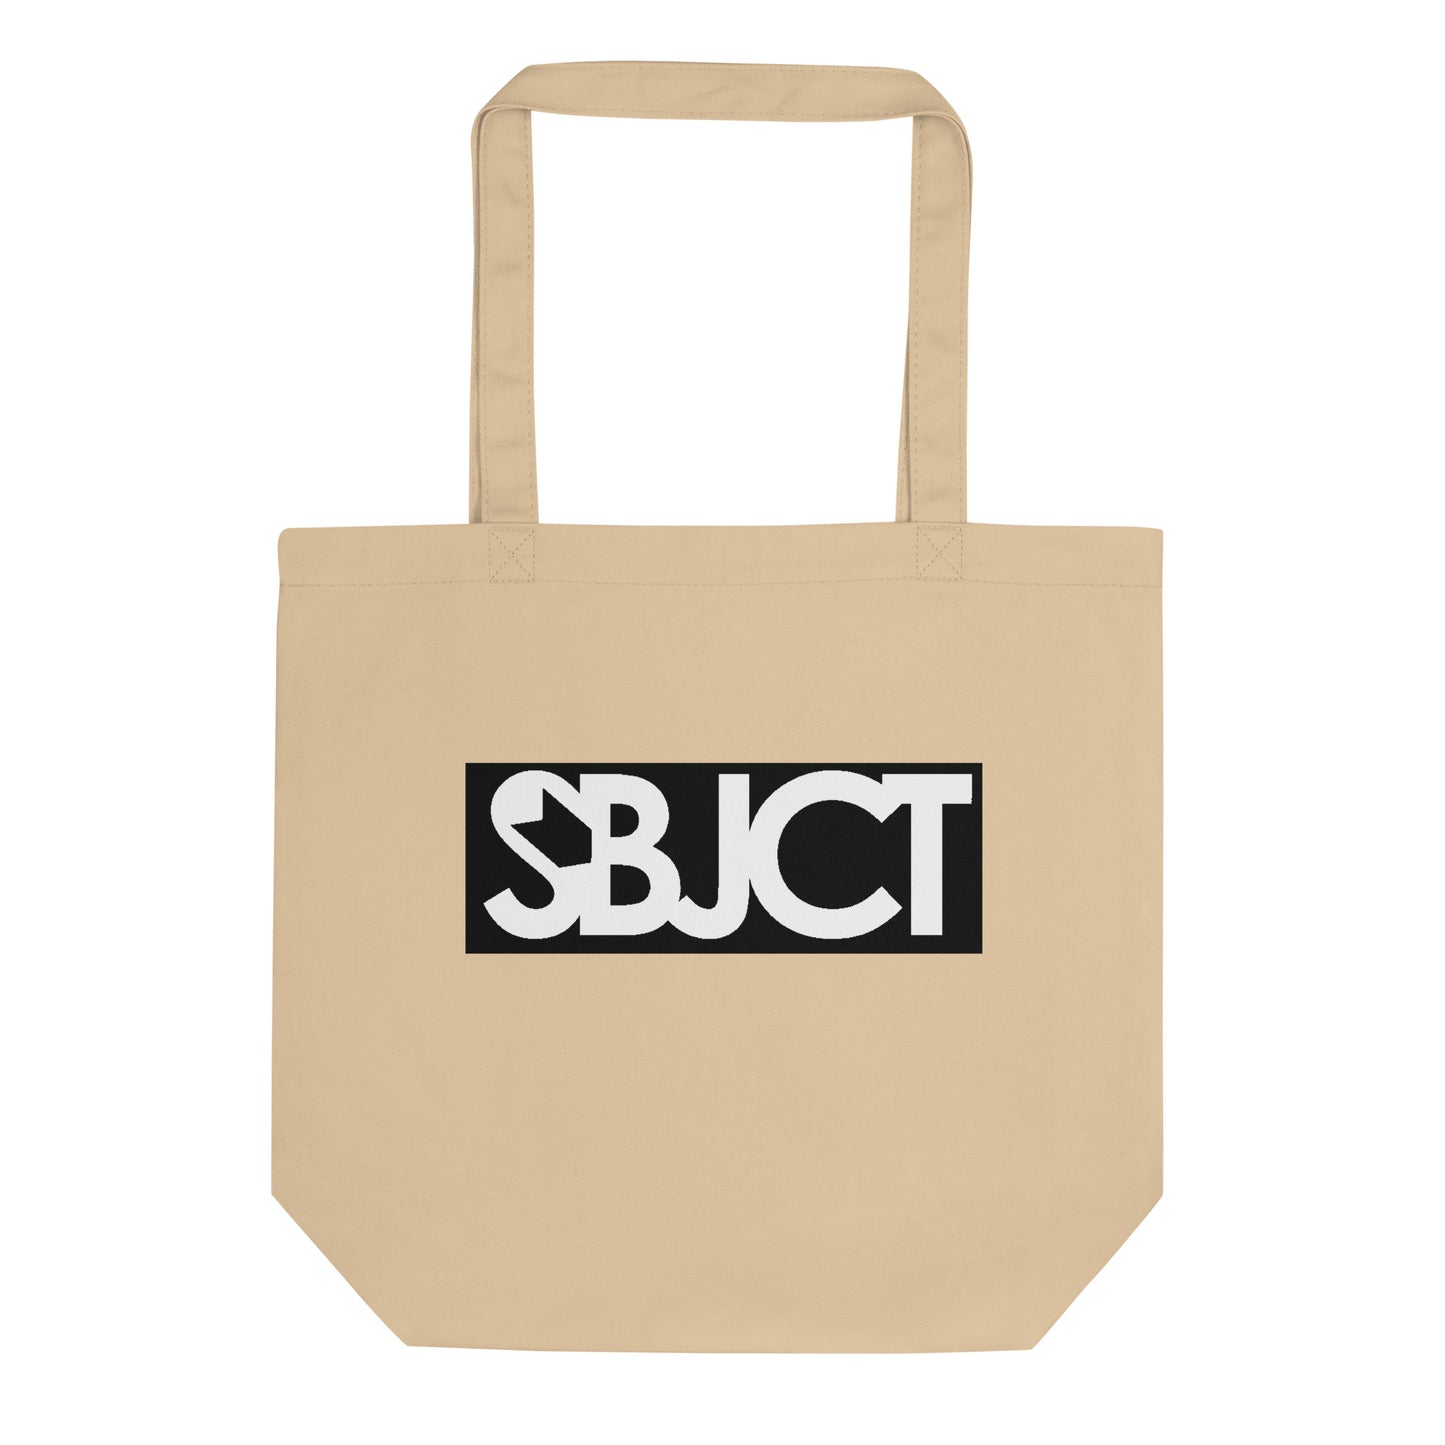 SBJCT Eco Tote Bag